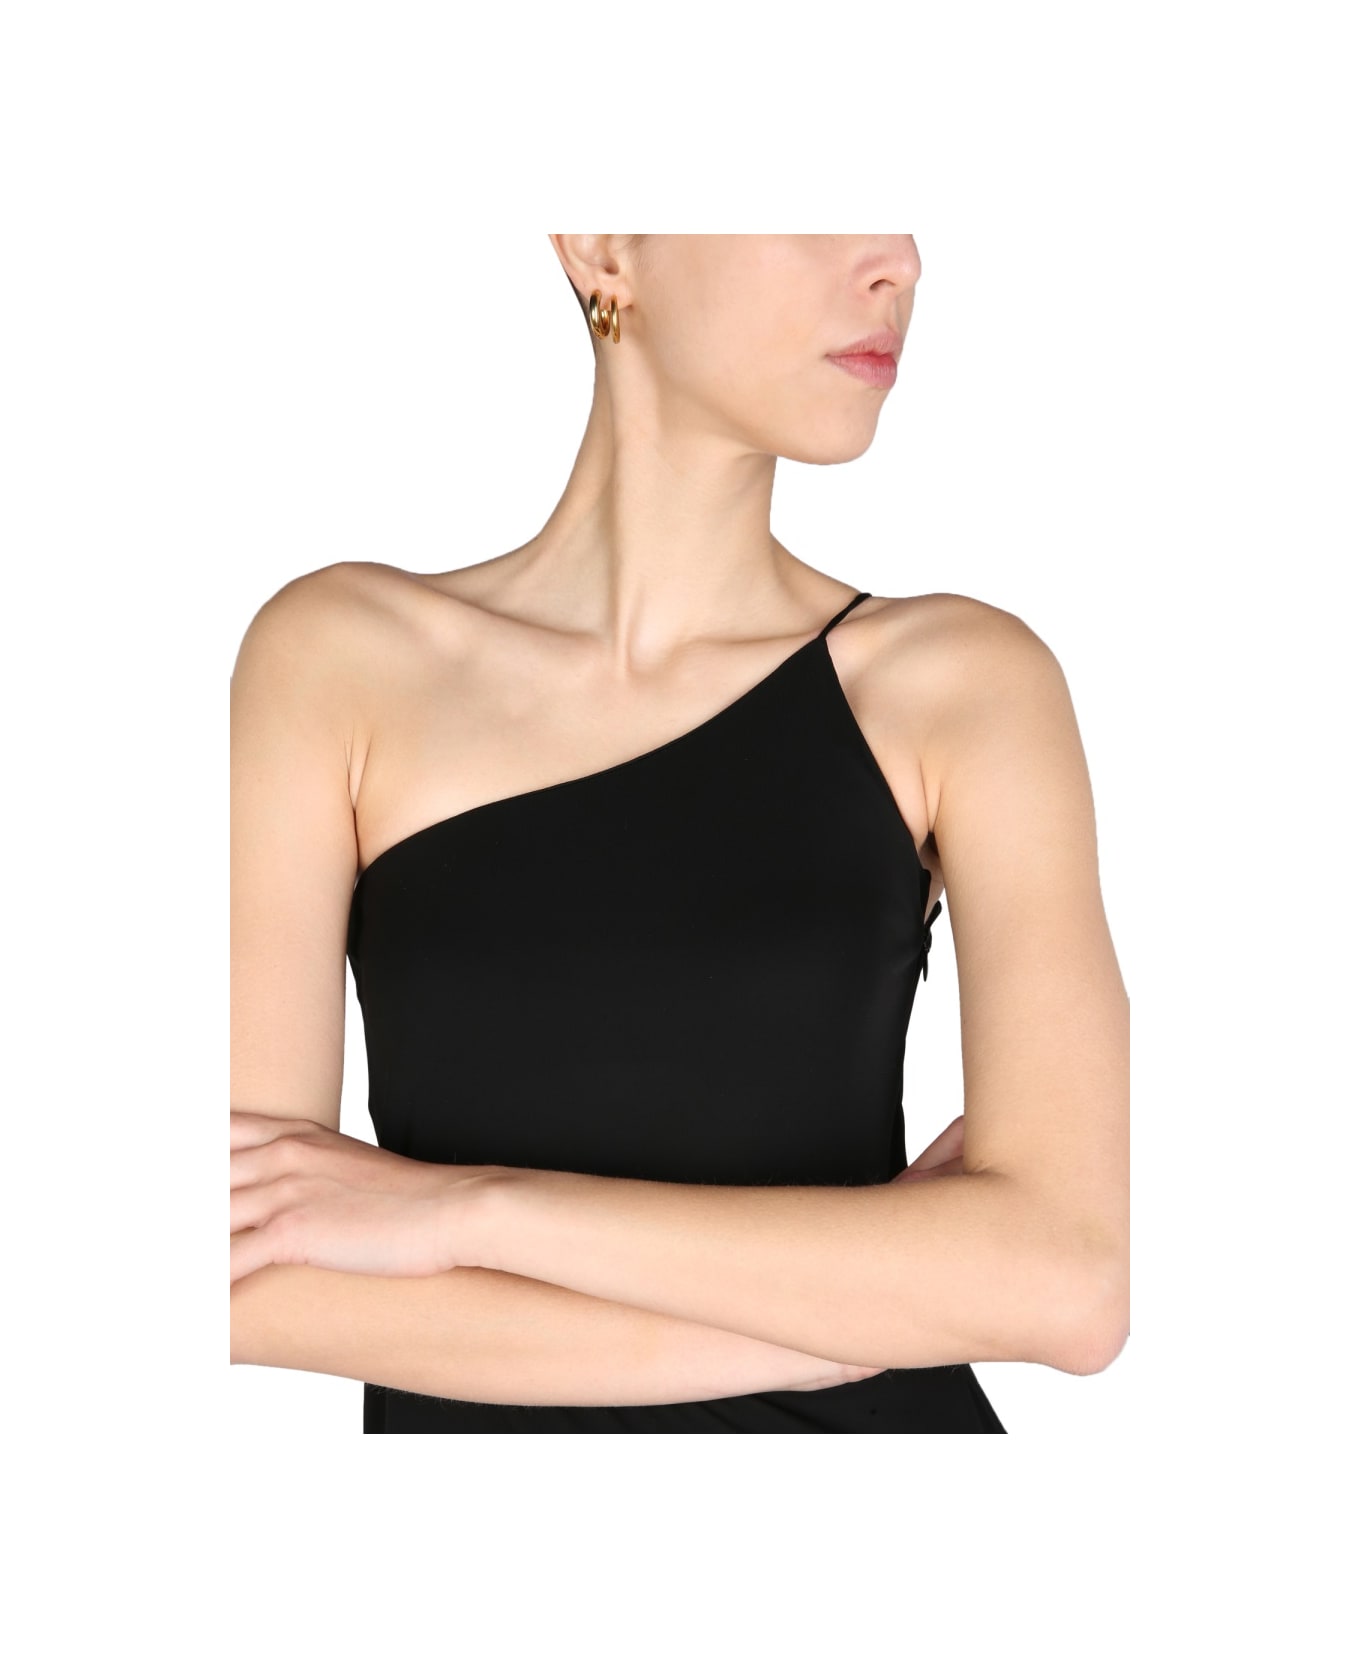 Dsquared2 One-shoulder Dress - BLACK